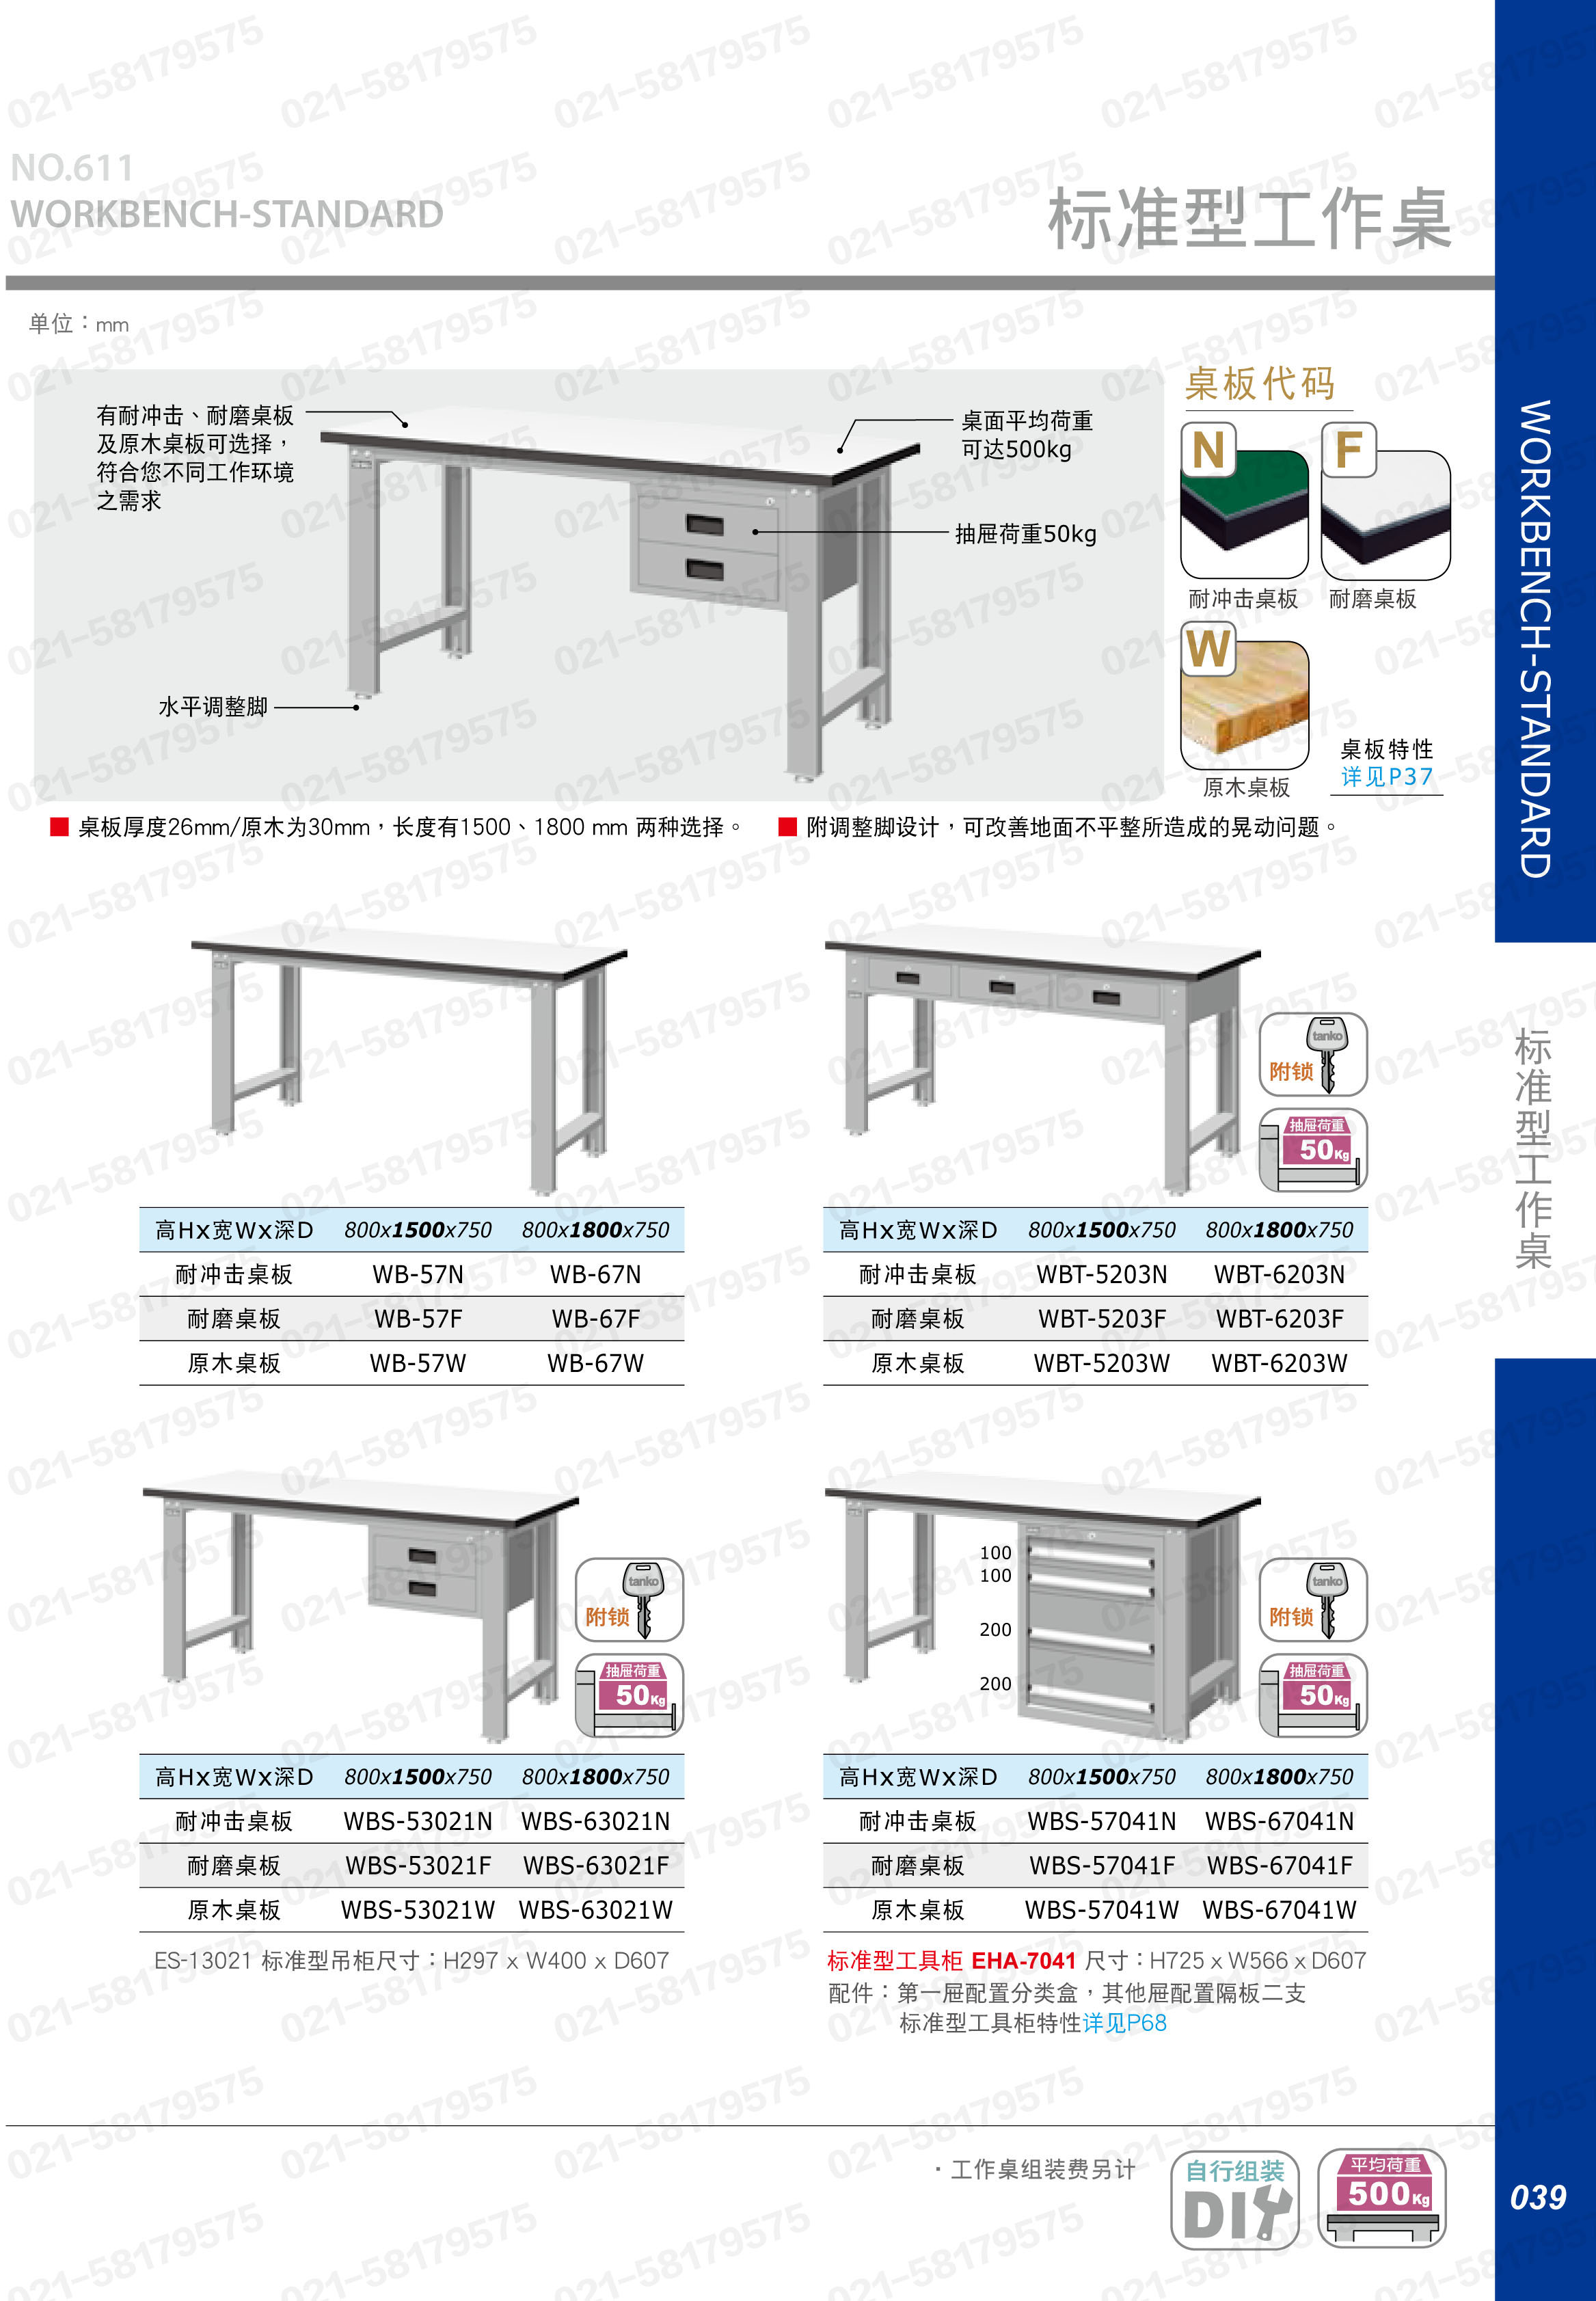 轻型工作桌1800×750×800mm 耐冲击桌板 带四抽边柜,WBS-67041N,5D2947